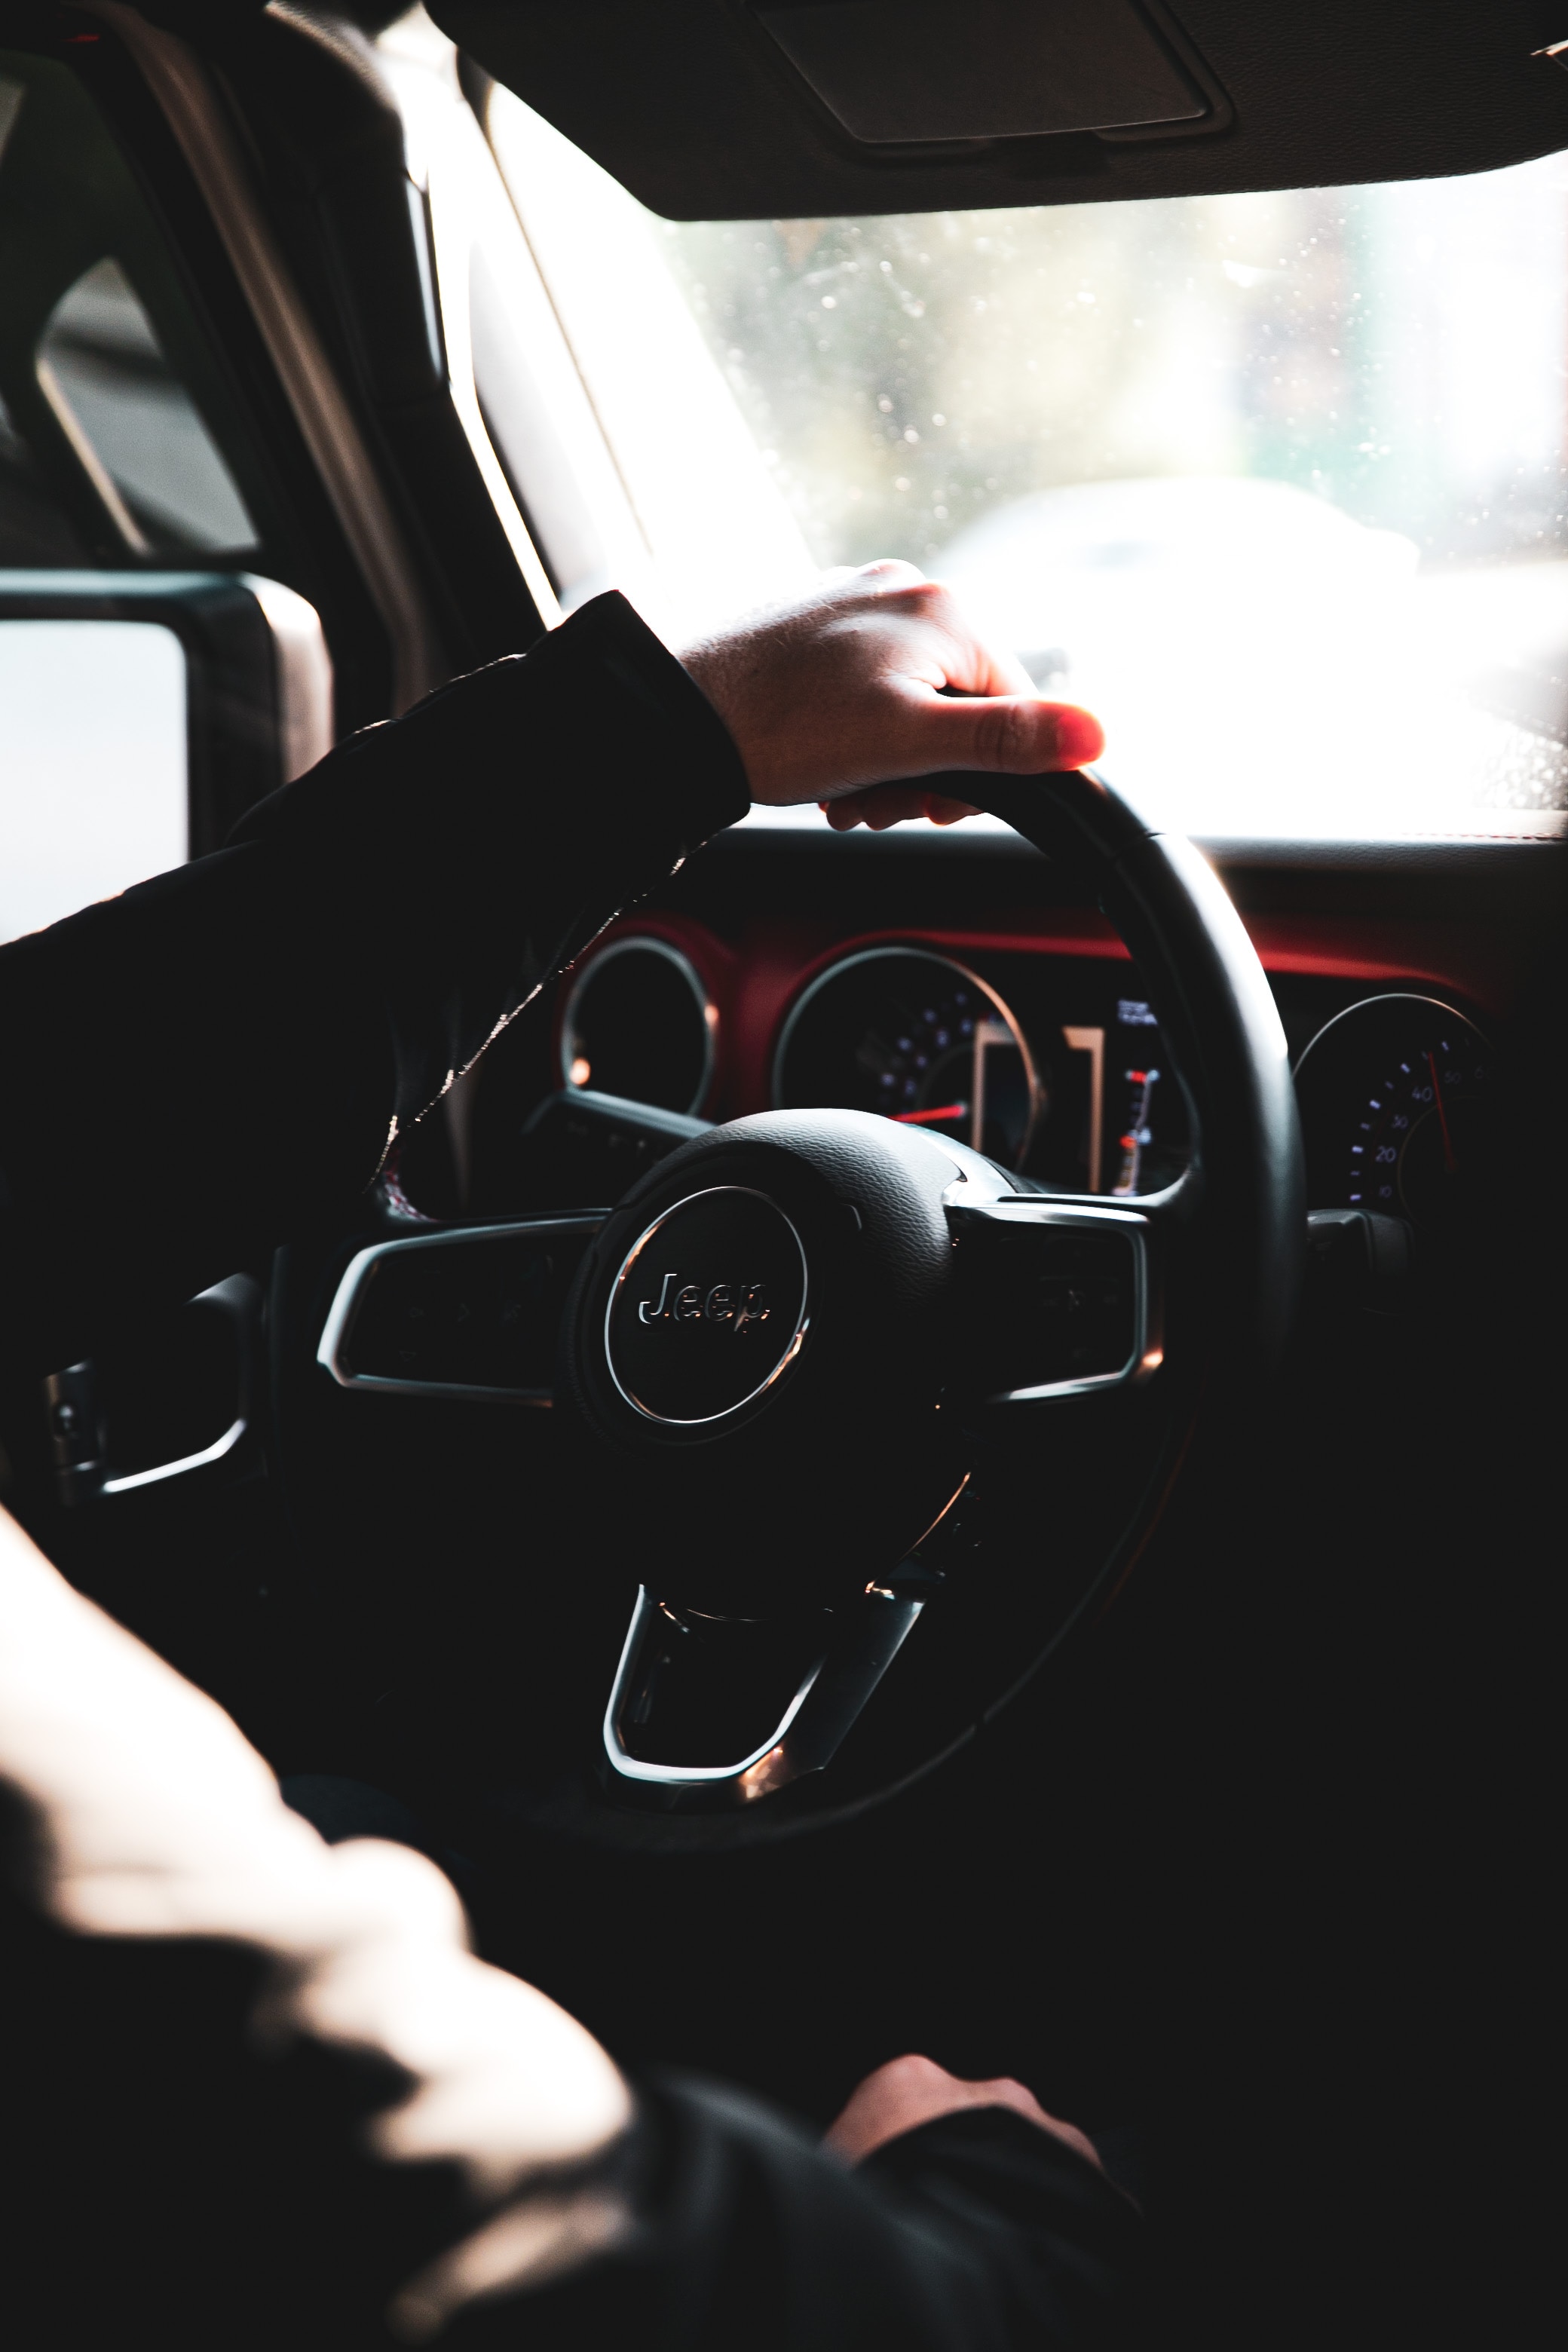 steering wheel, dark, rudder, cars, hand, car, machine, salon cellphone